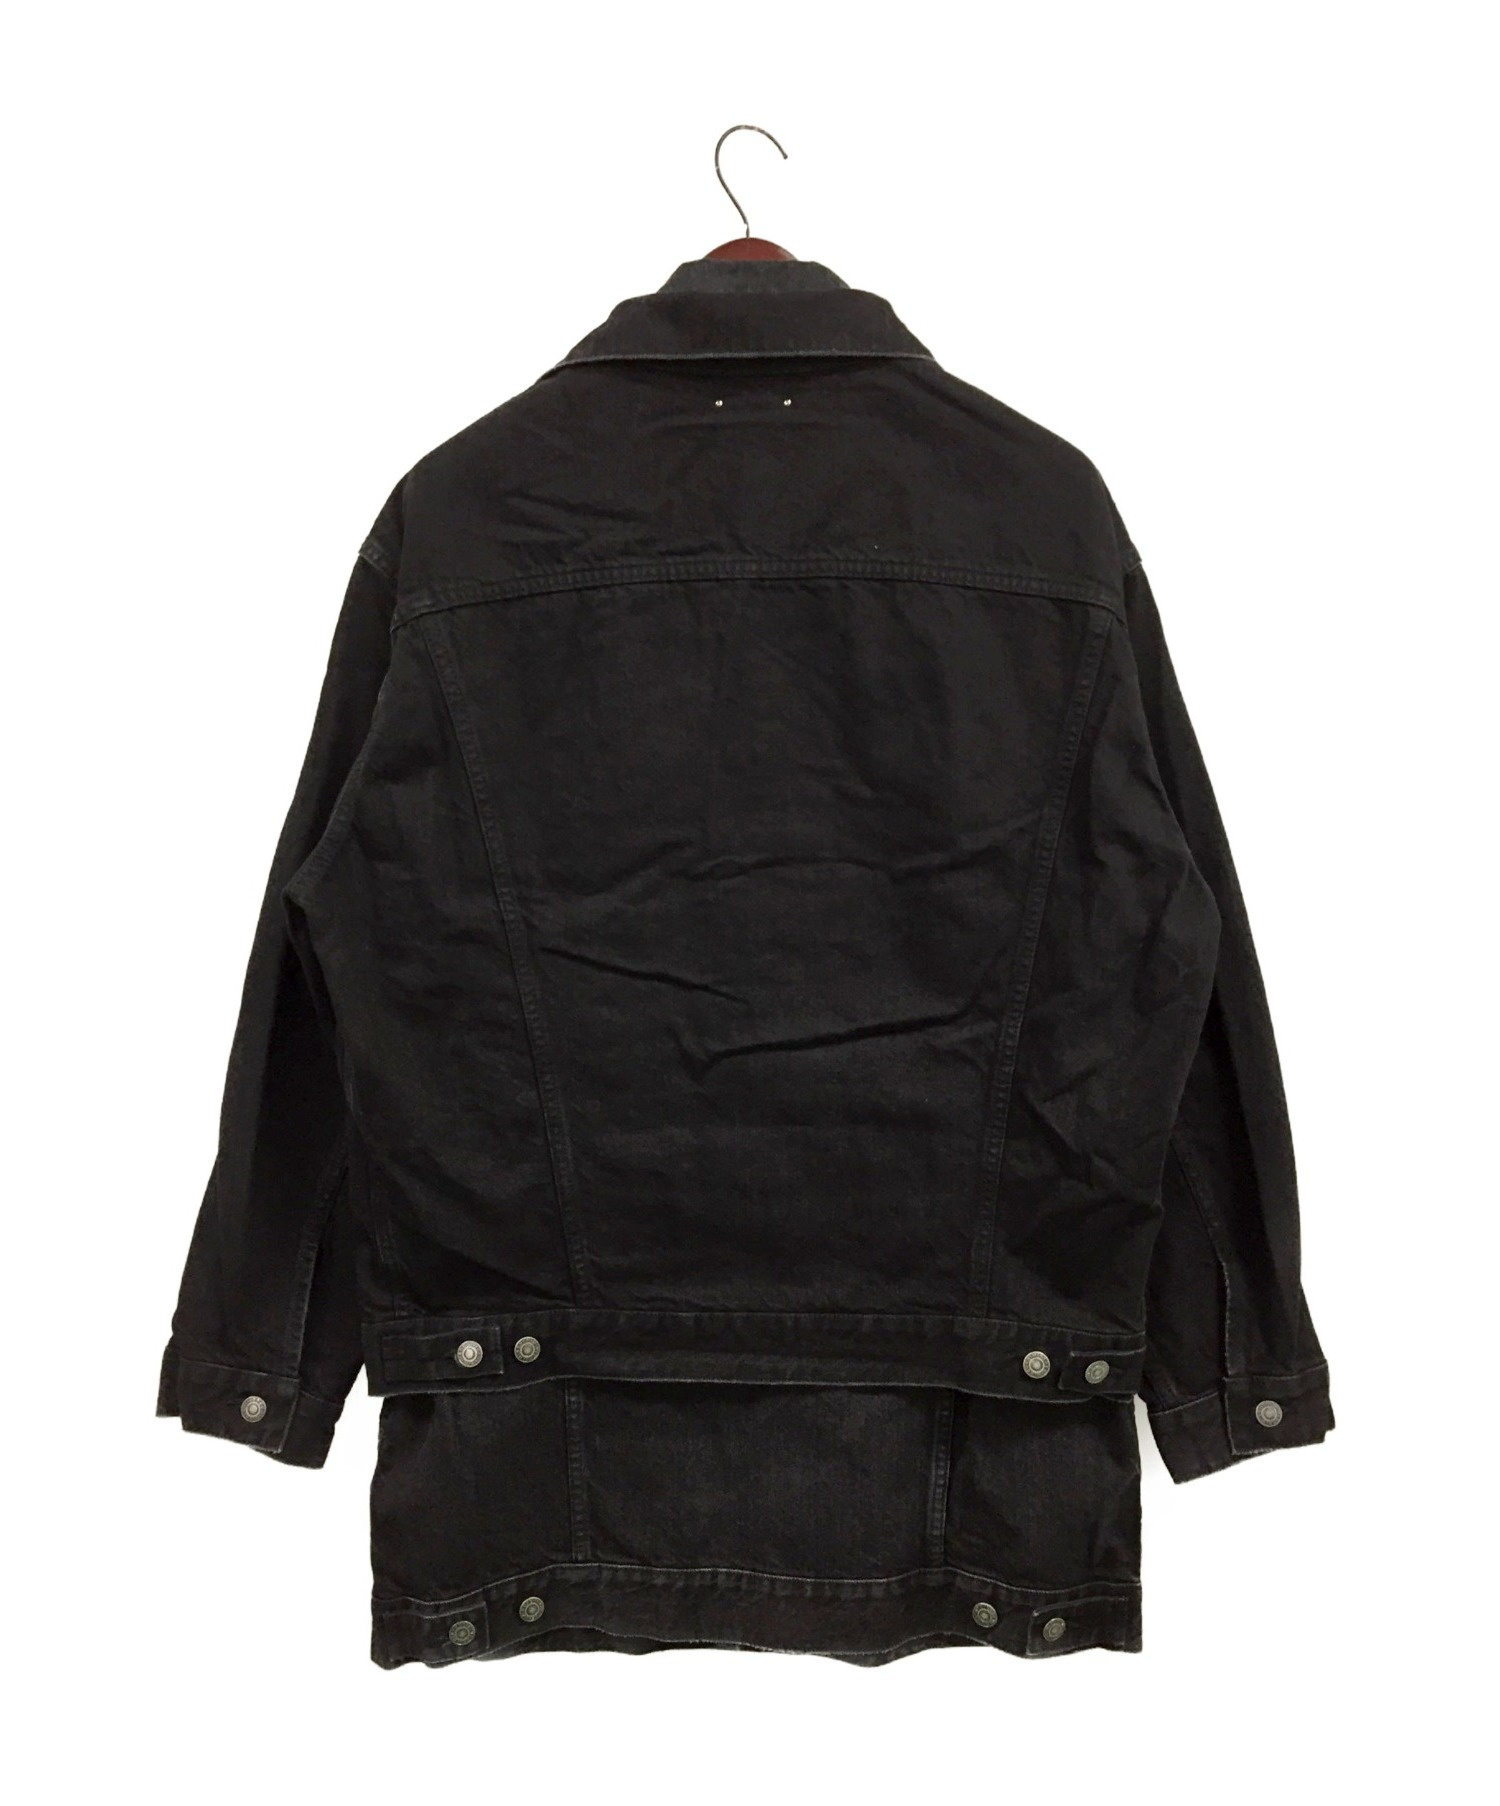 MINEDENIM (マインデニム) レイヤードロングデニムジャケット ブラック サイズ:2 未使用品